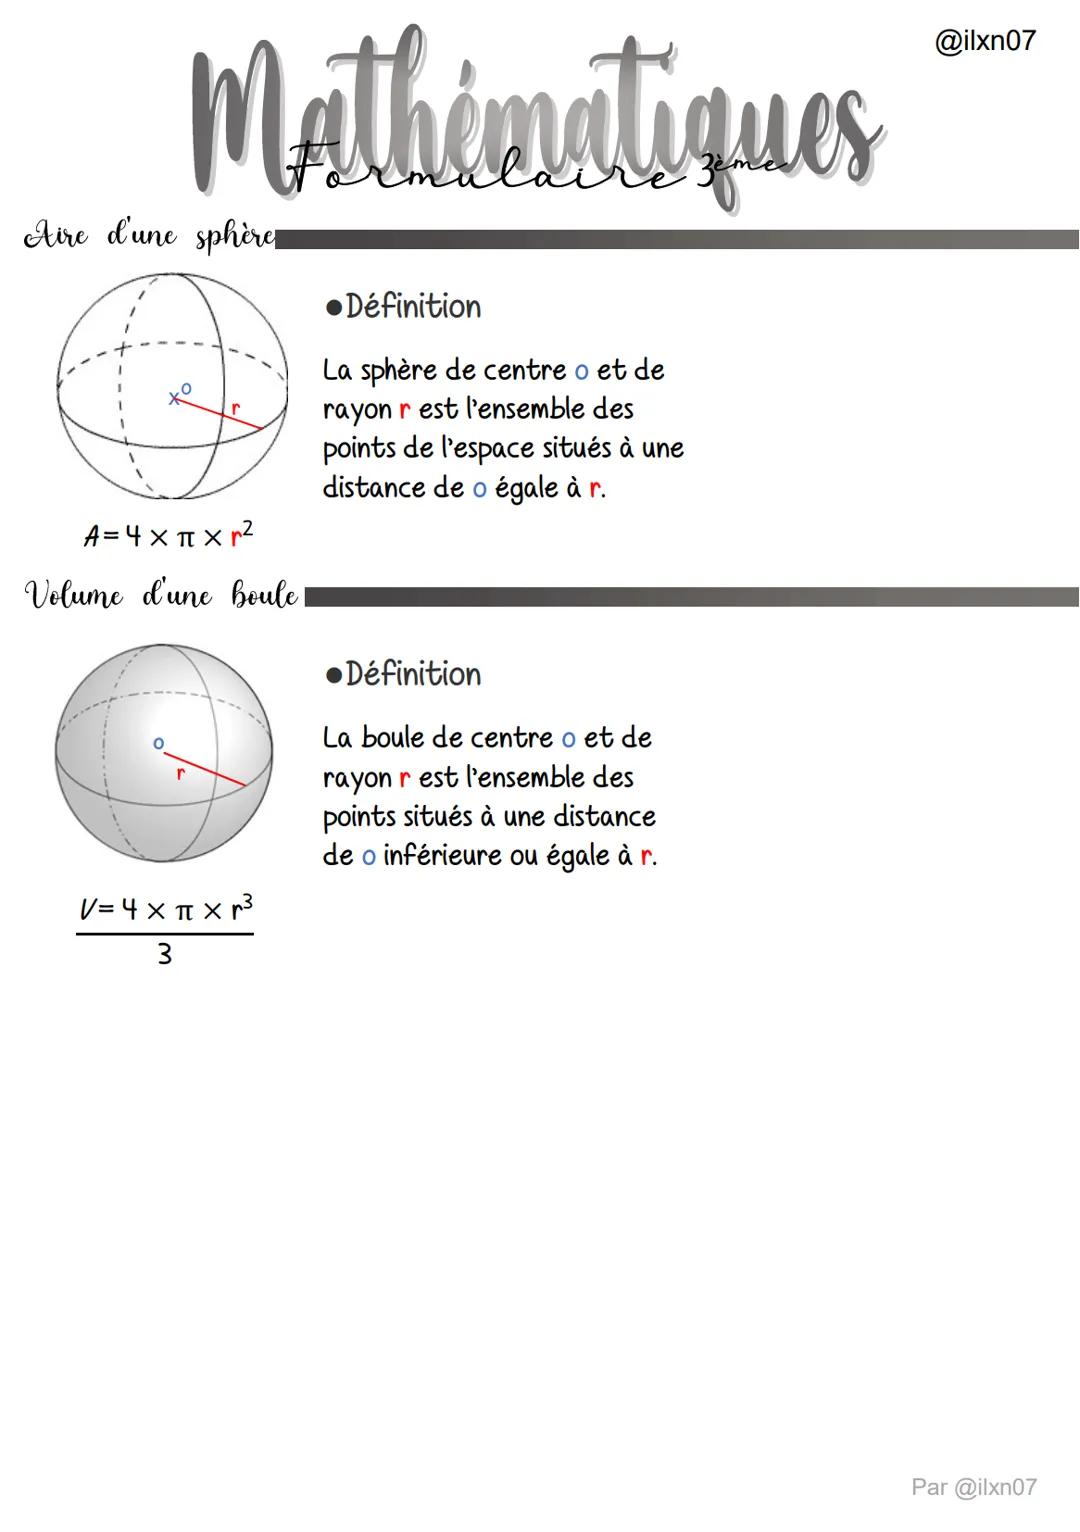 Périmètres et Aires des figures planes
●Le carré.
P = 4 x c
A = c²=CX C
1
P =
Mathématiques
Le triangle rectangle.
L
V=C³
Le cône
X
Le récta